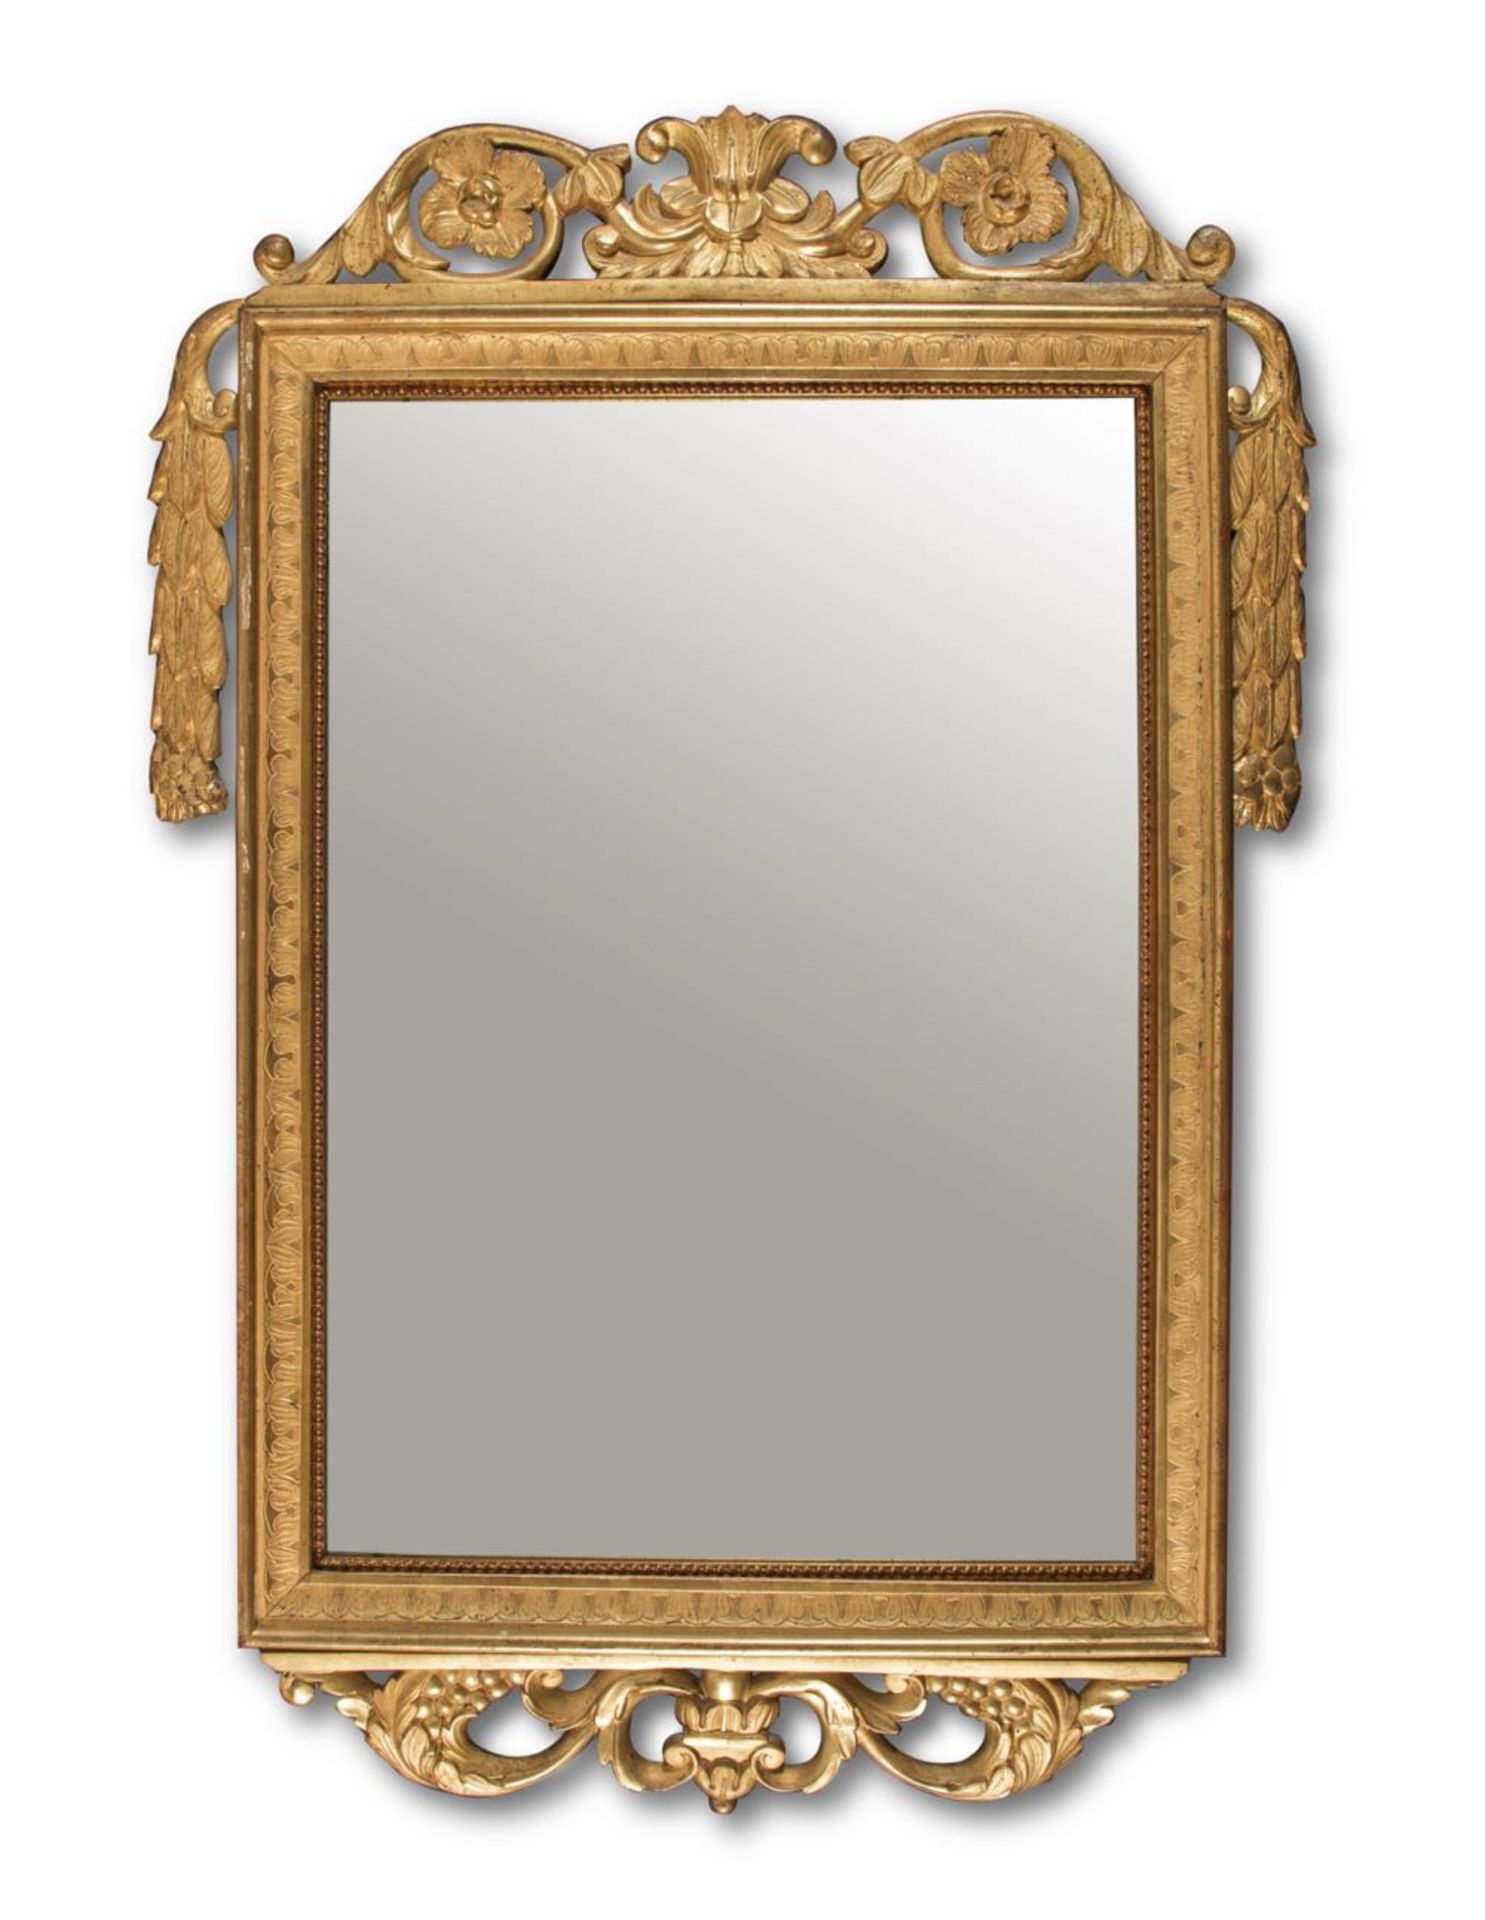 Specchiera in legno intagliato e dorato di gusto Luigi XVI, inizio del XIX secolo.